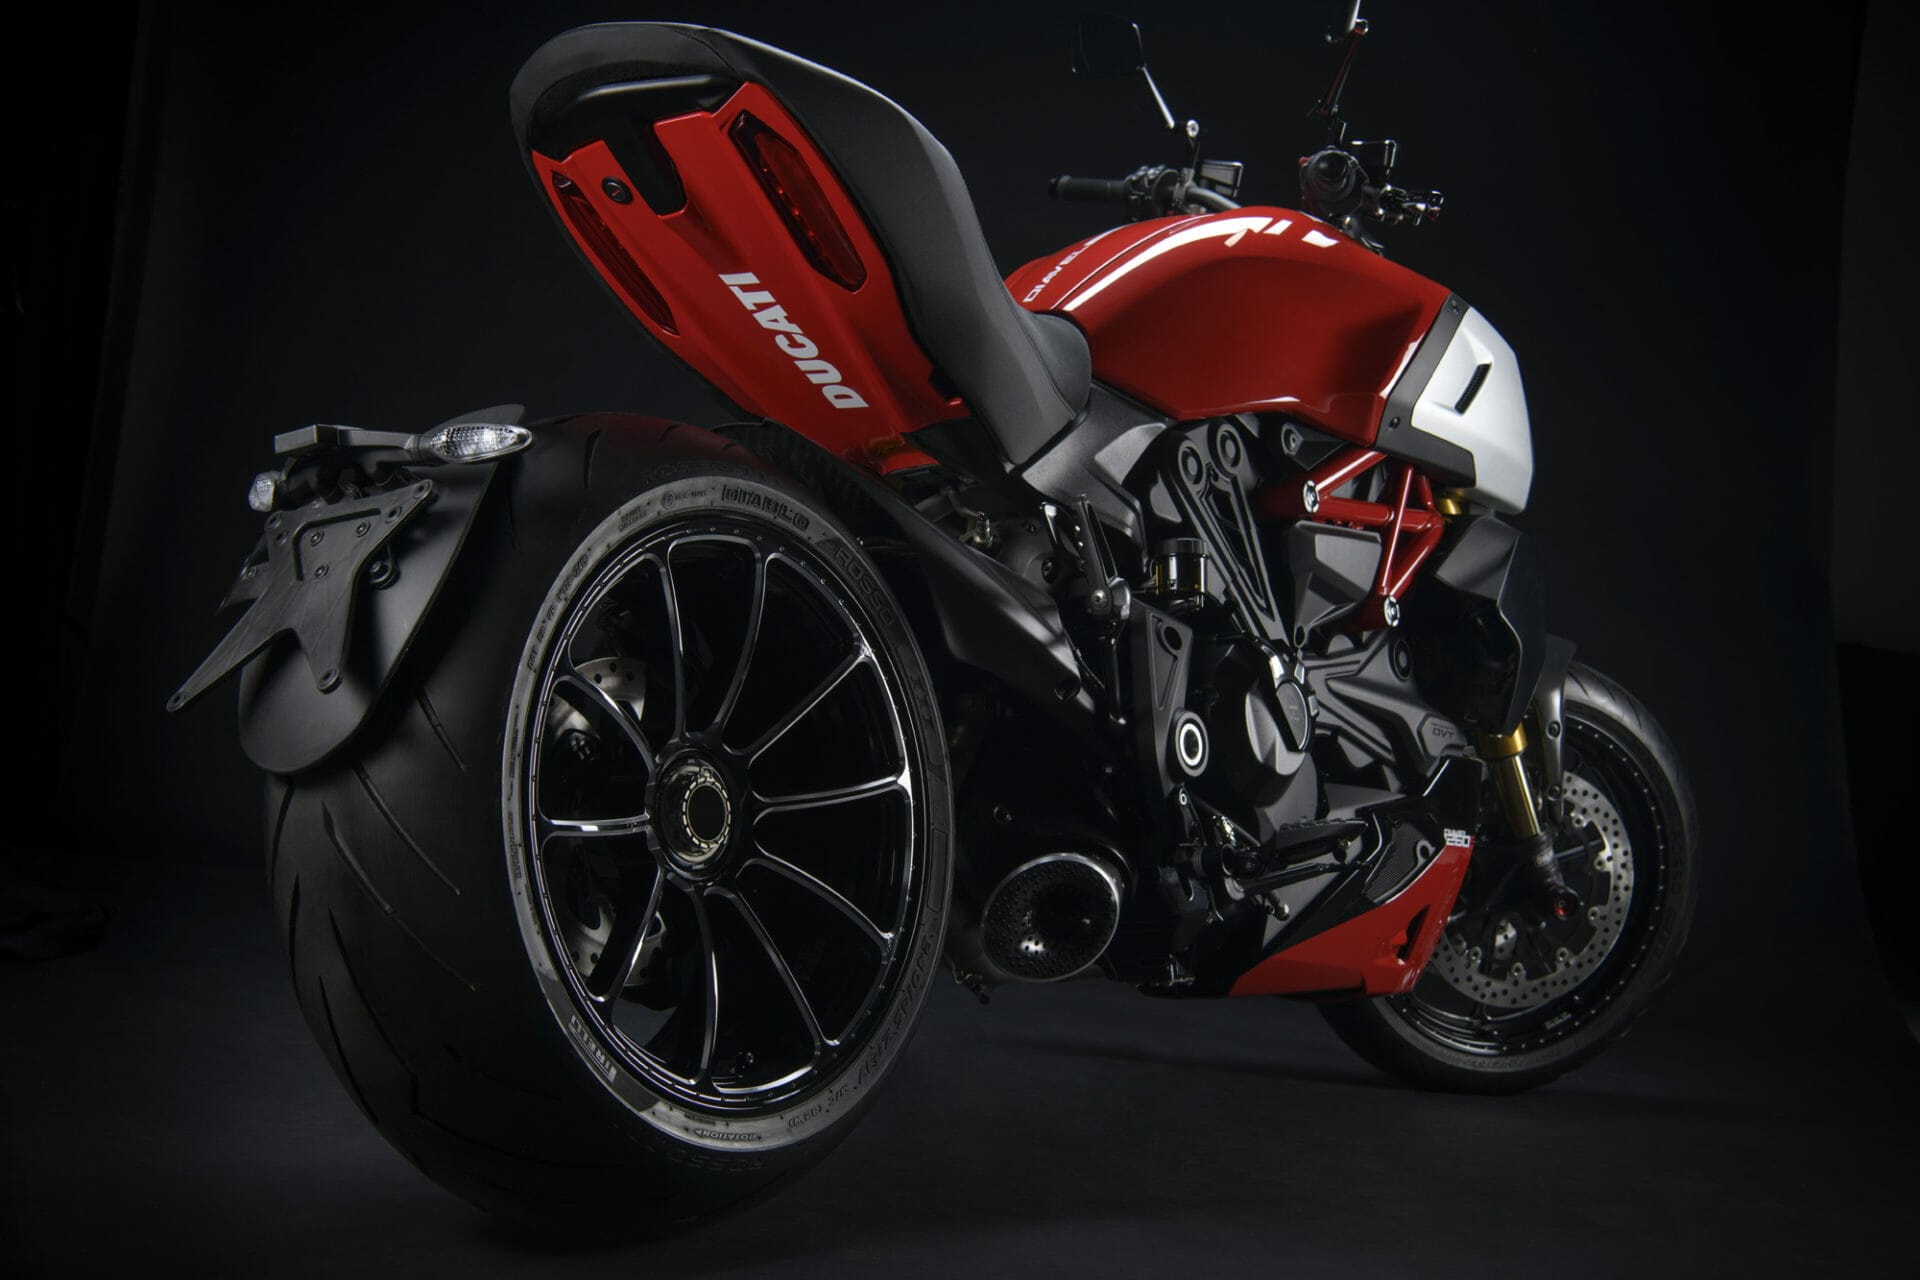 Ducati Performance-Zubehör für die Diavel 1260
- auch in der MOTORRAD NACHRICHTEN APP